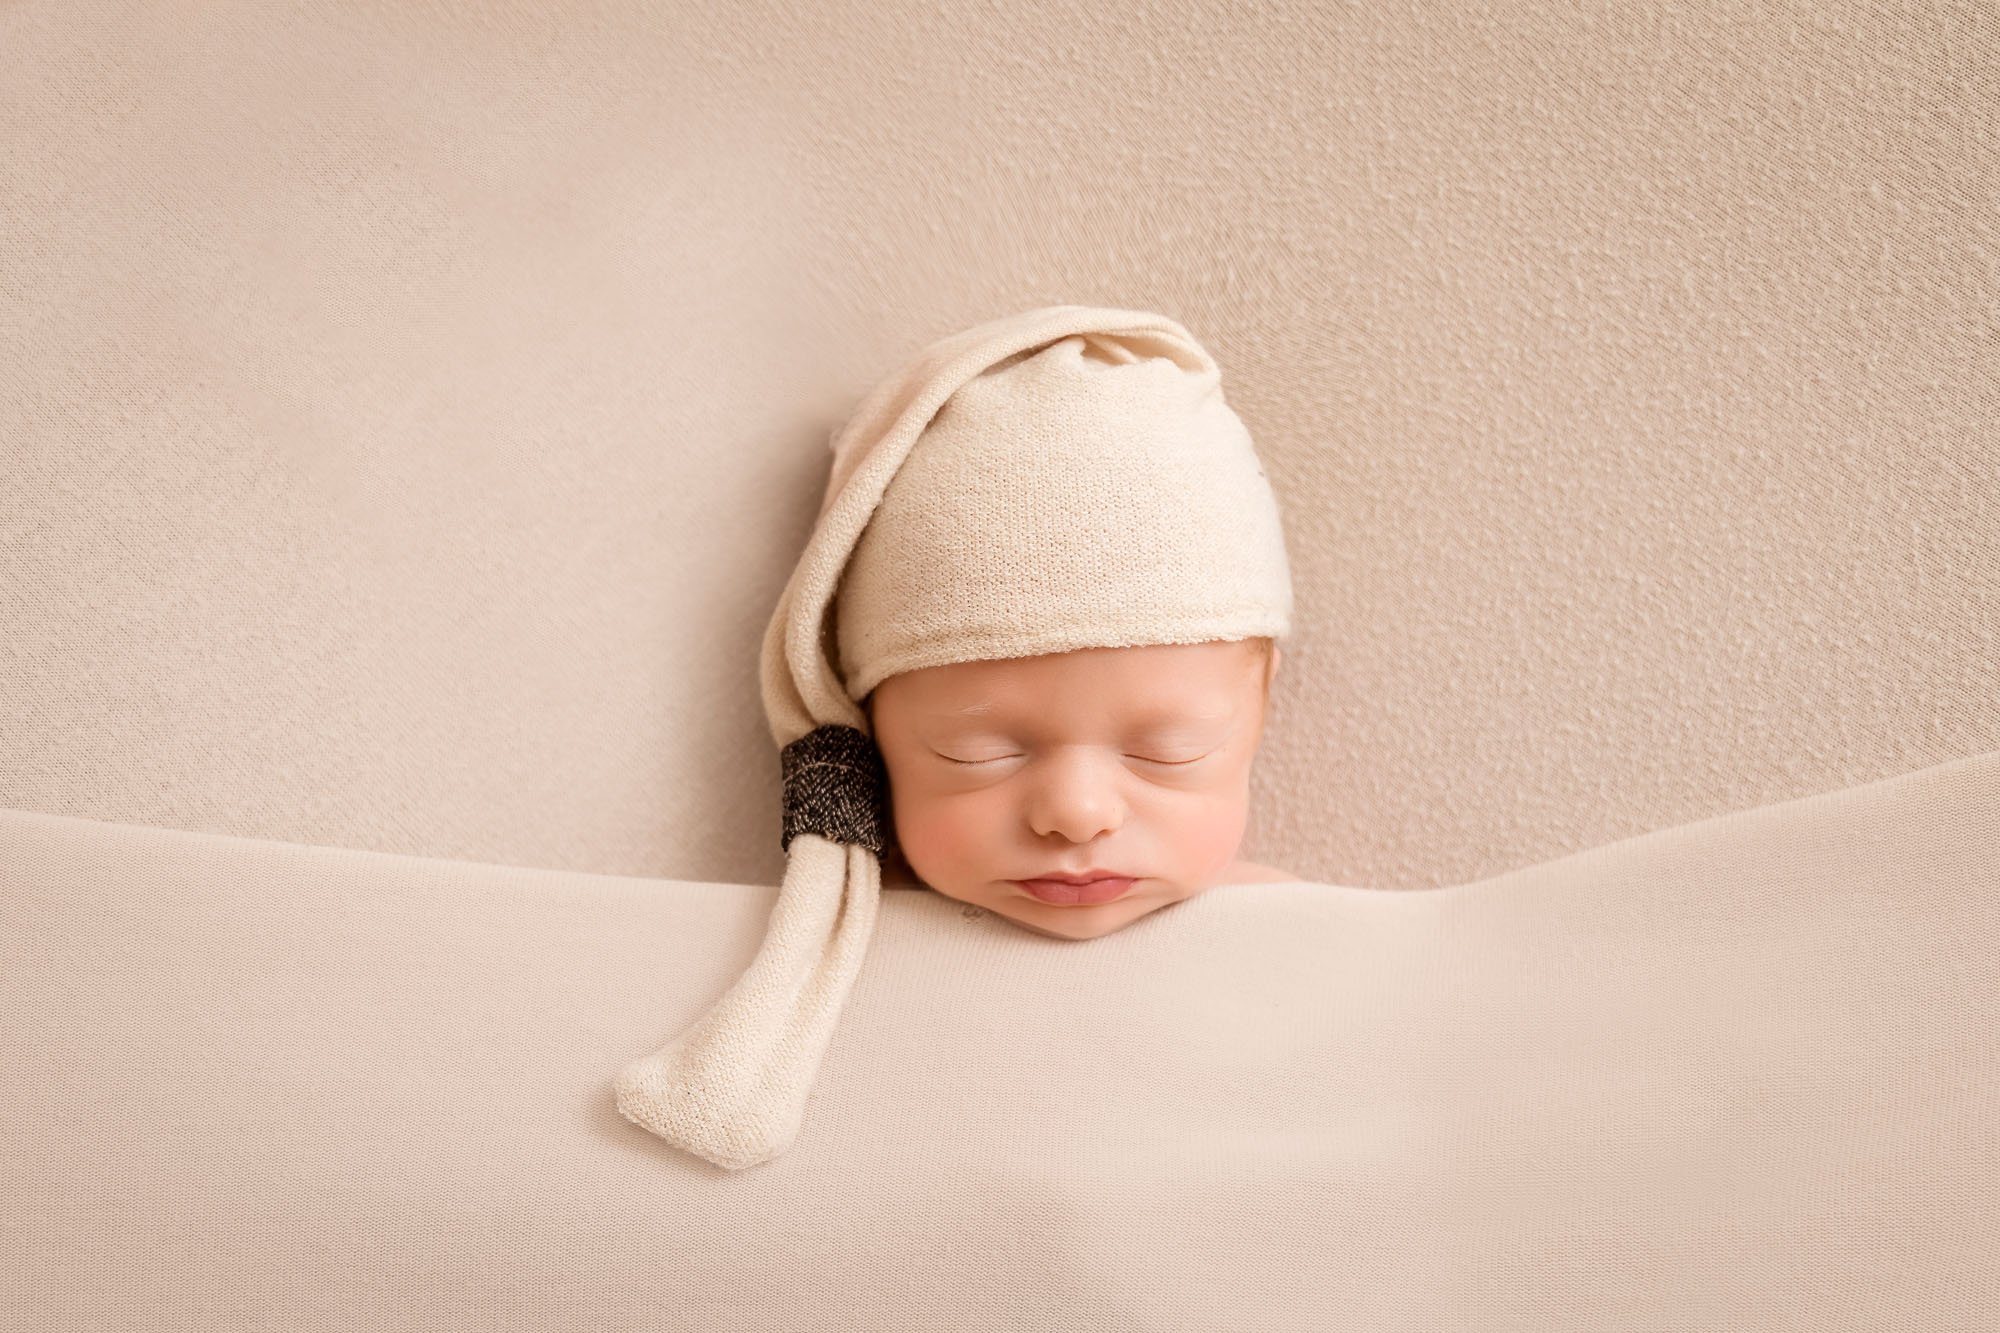 Newborn-photography-in-leeds-tucked-in-bed-cream.jpg